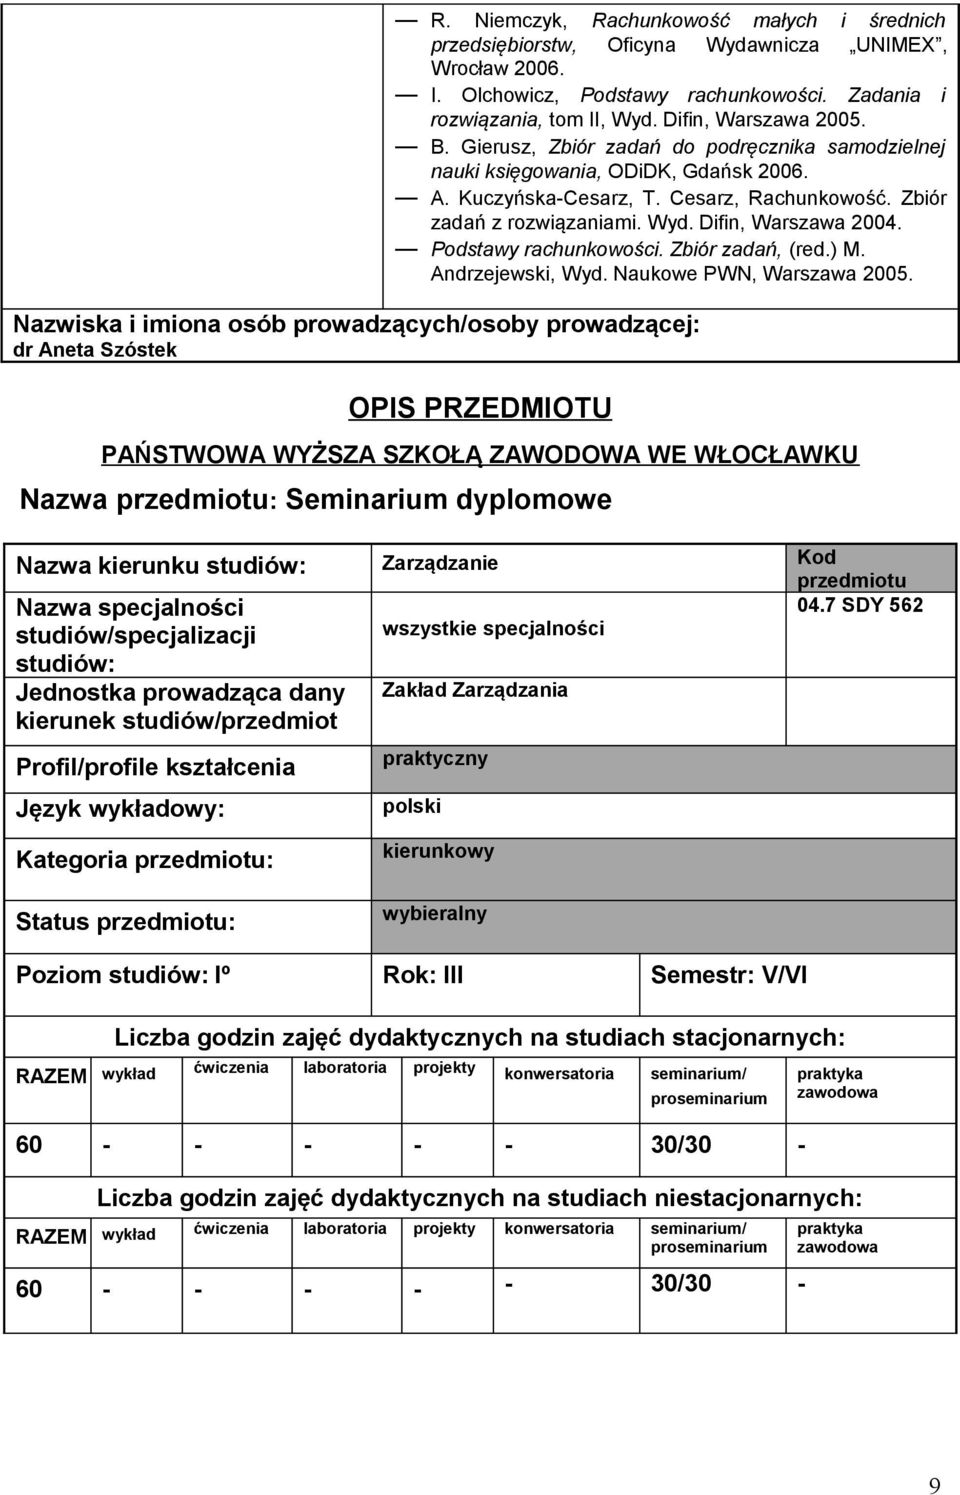 Podstawy rachunkowości. Zbiór zadań, (red.) M. Andrzejewski, yd. Naukowe PN, arszawa 2005.